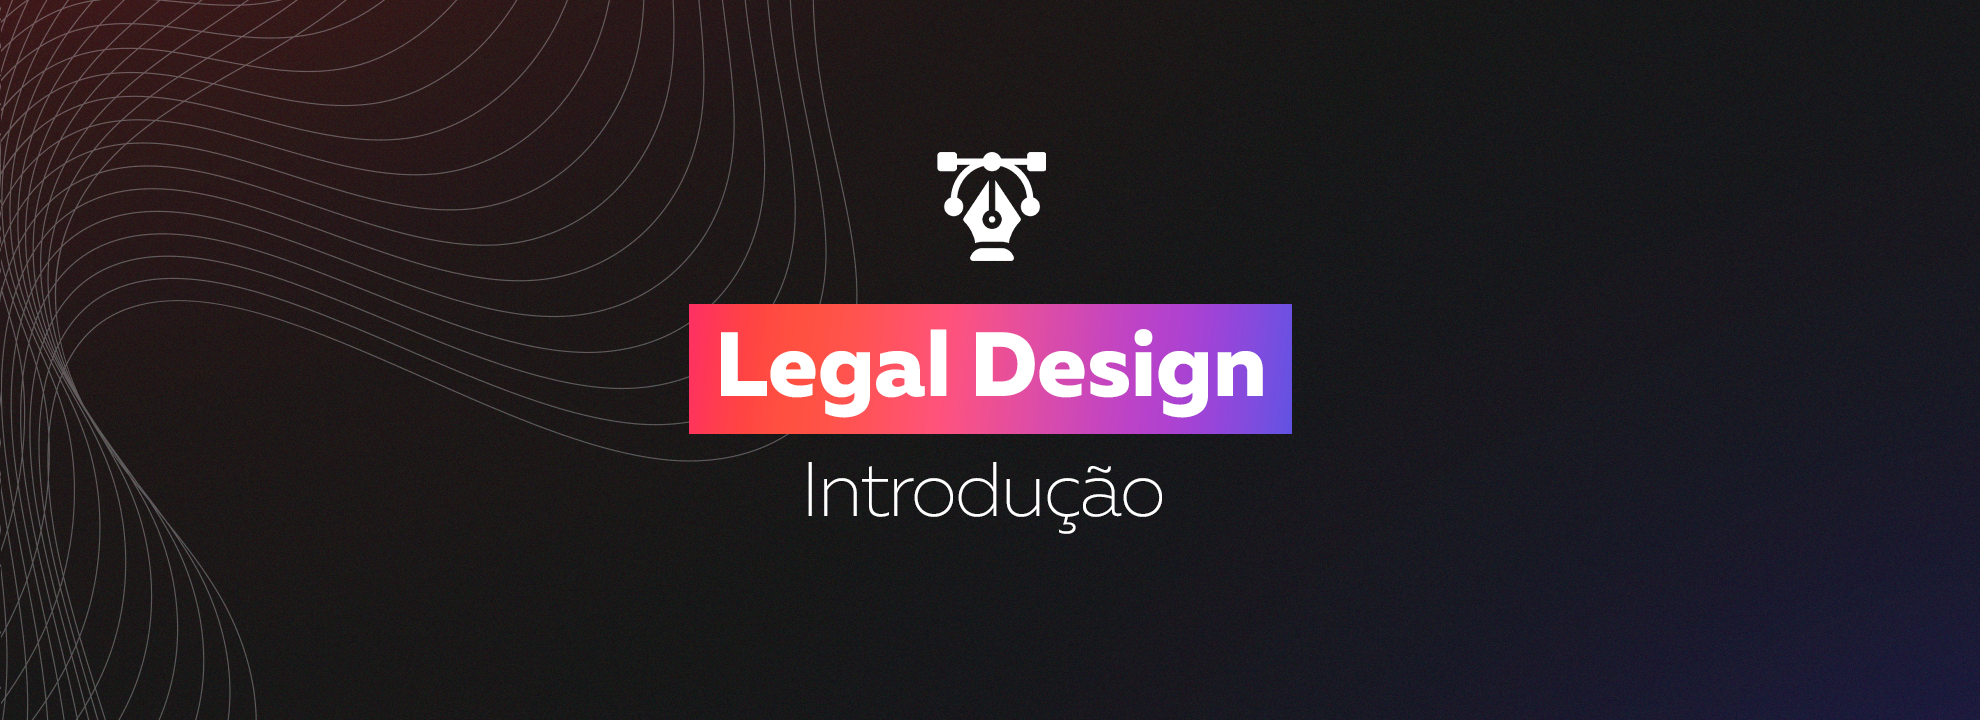 Legal Design introdução